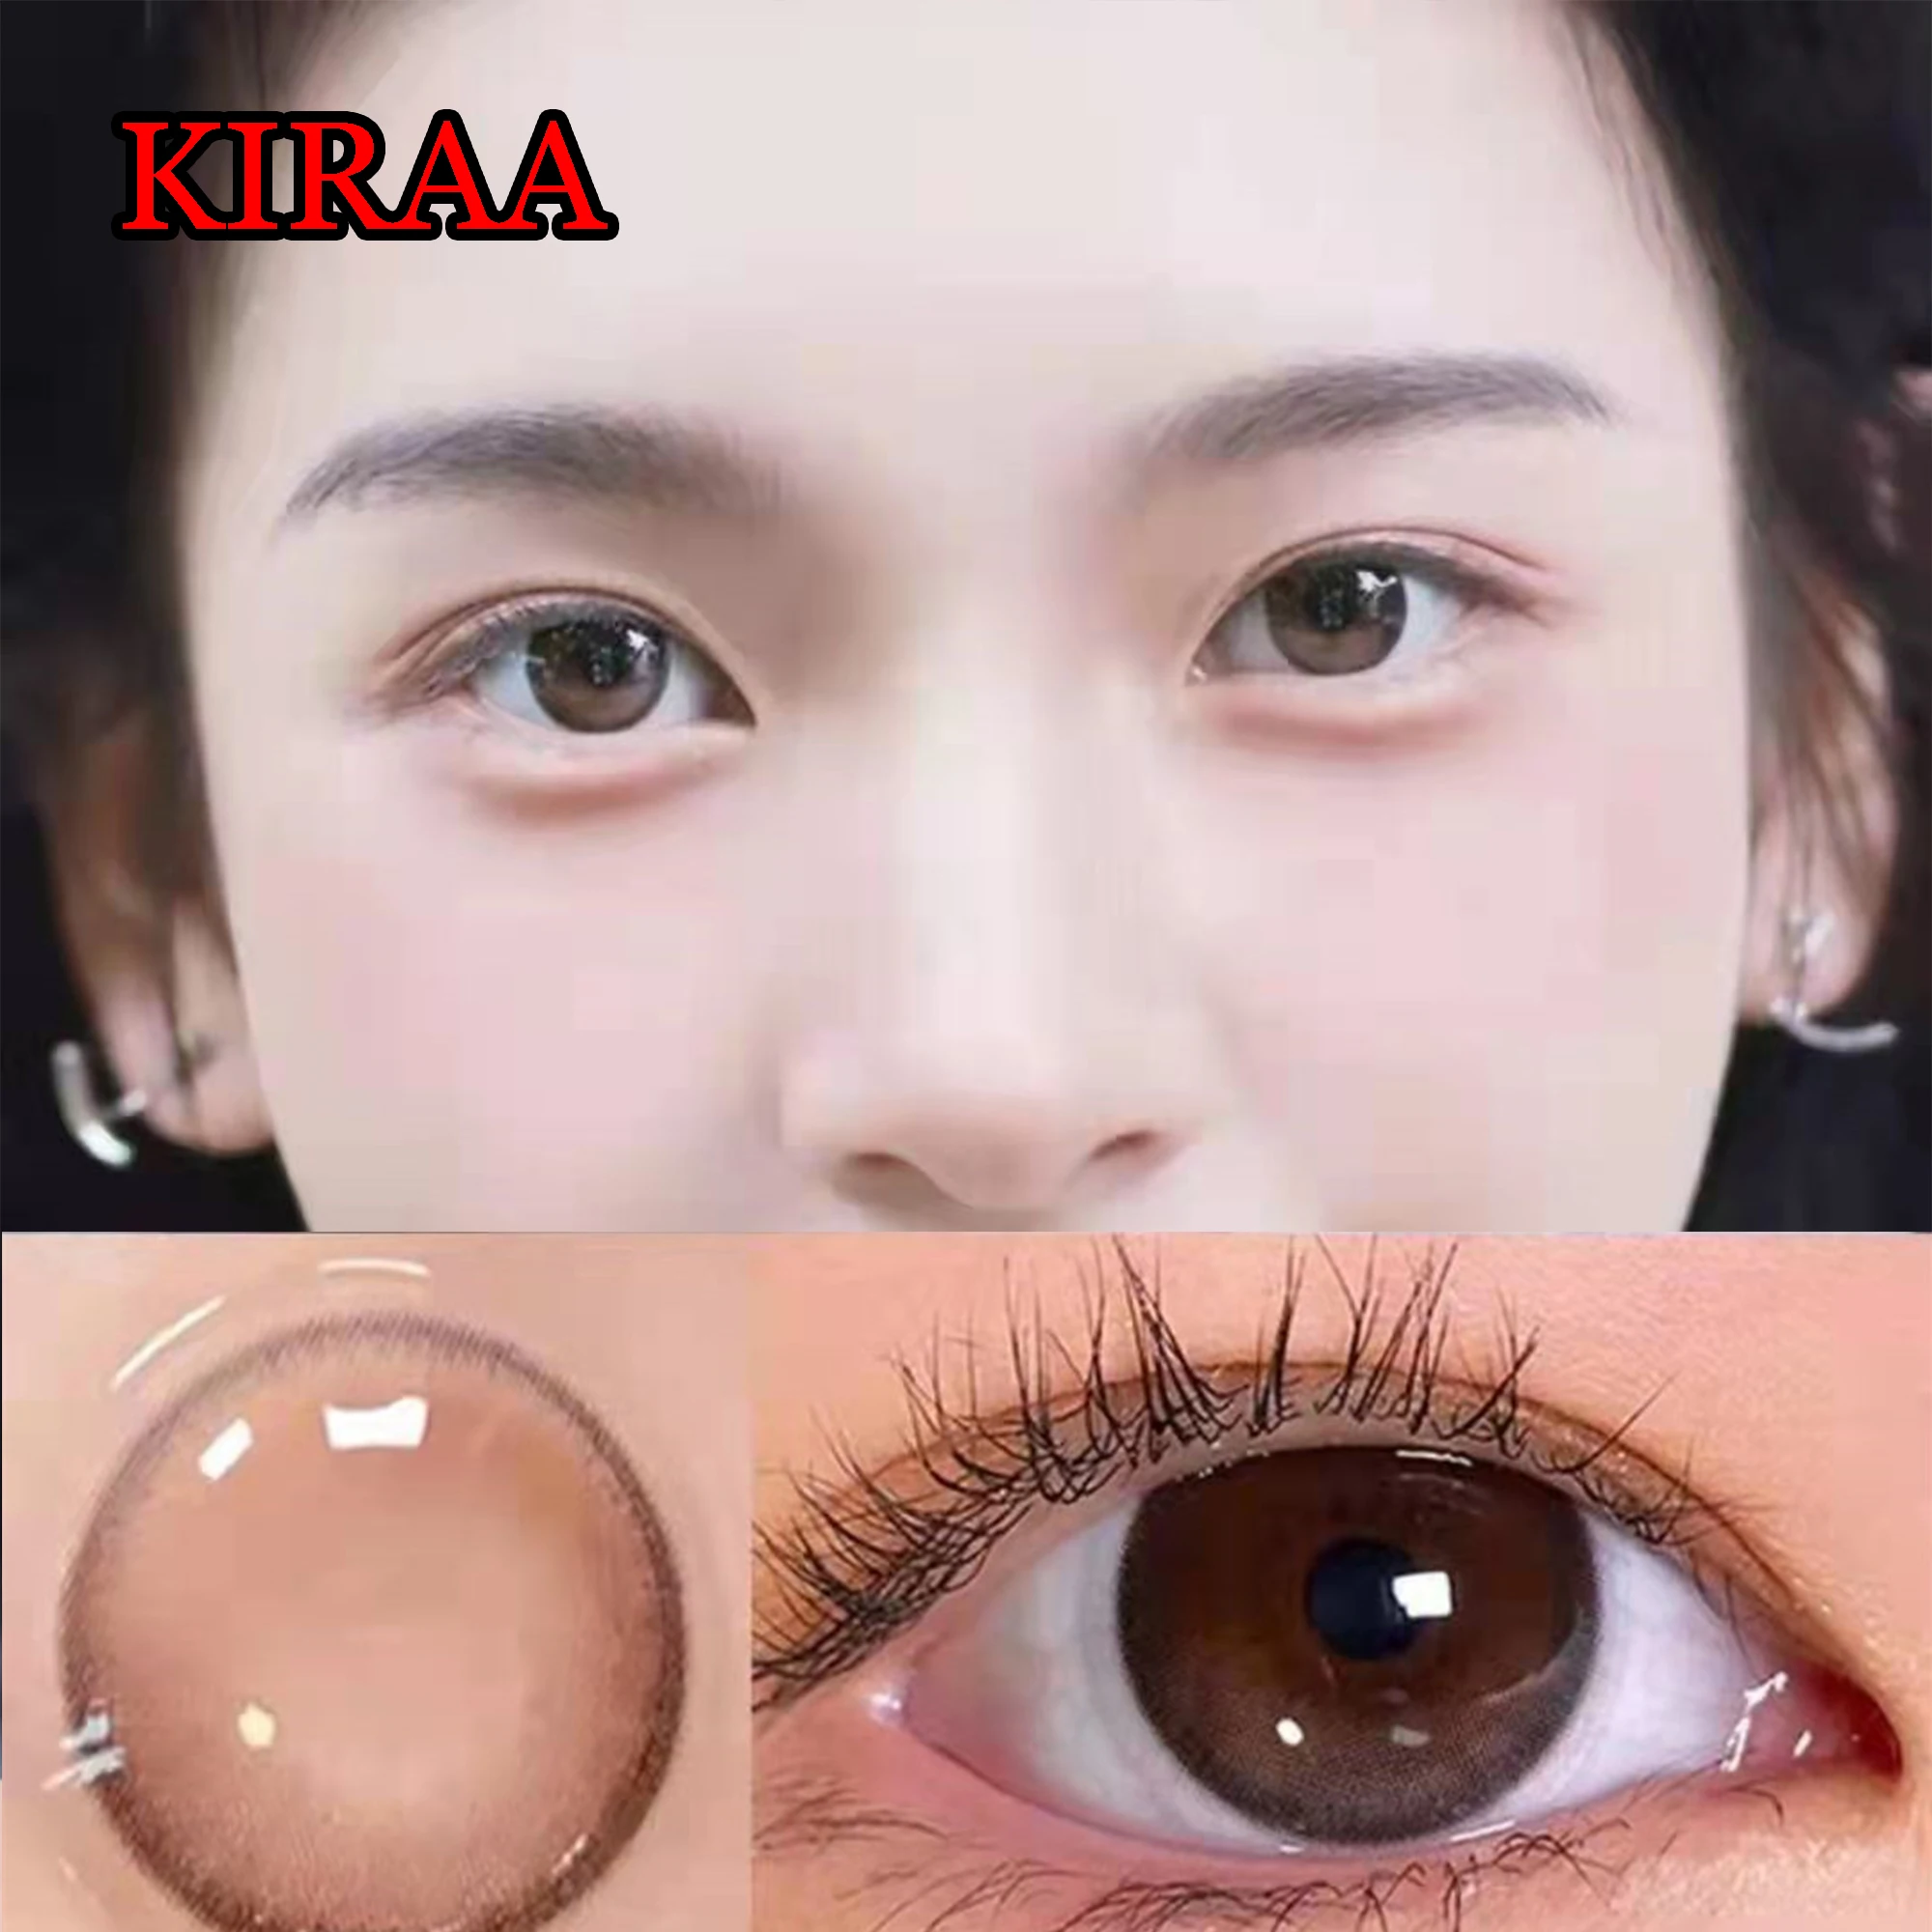 Lentes de contacto dulce para ojos de chica adolescente, gafas circulares con lentes de contacto graduadas, Kiraa violeta